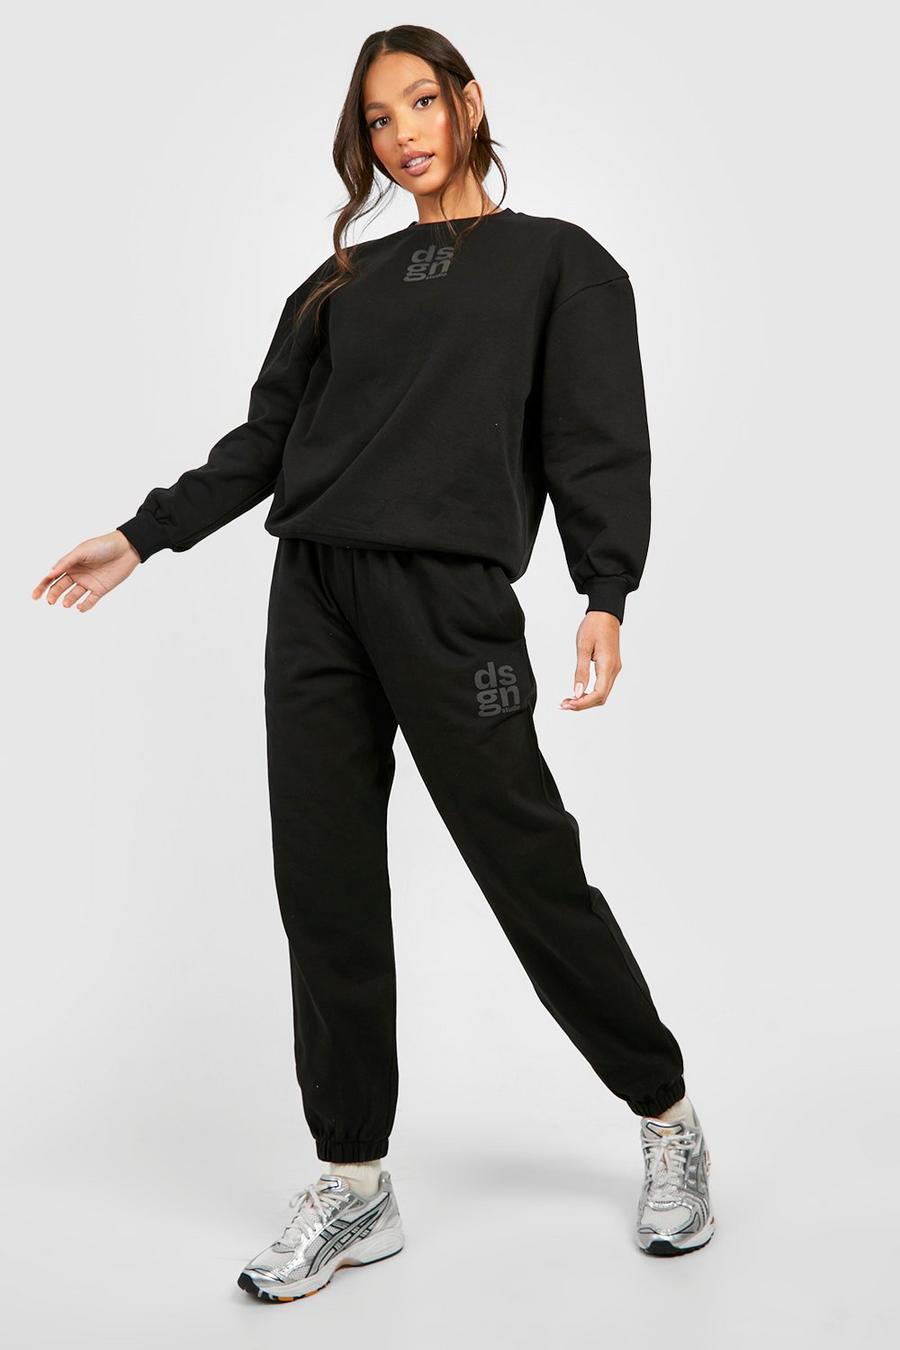 Black svart Dsgn Mjukisset med sweatshirt och tryck